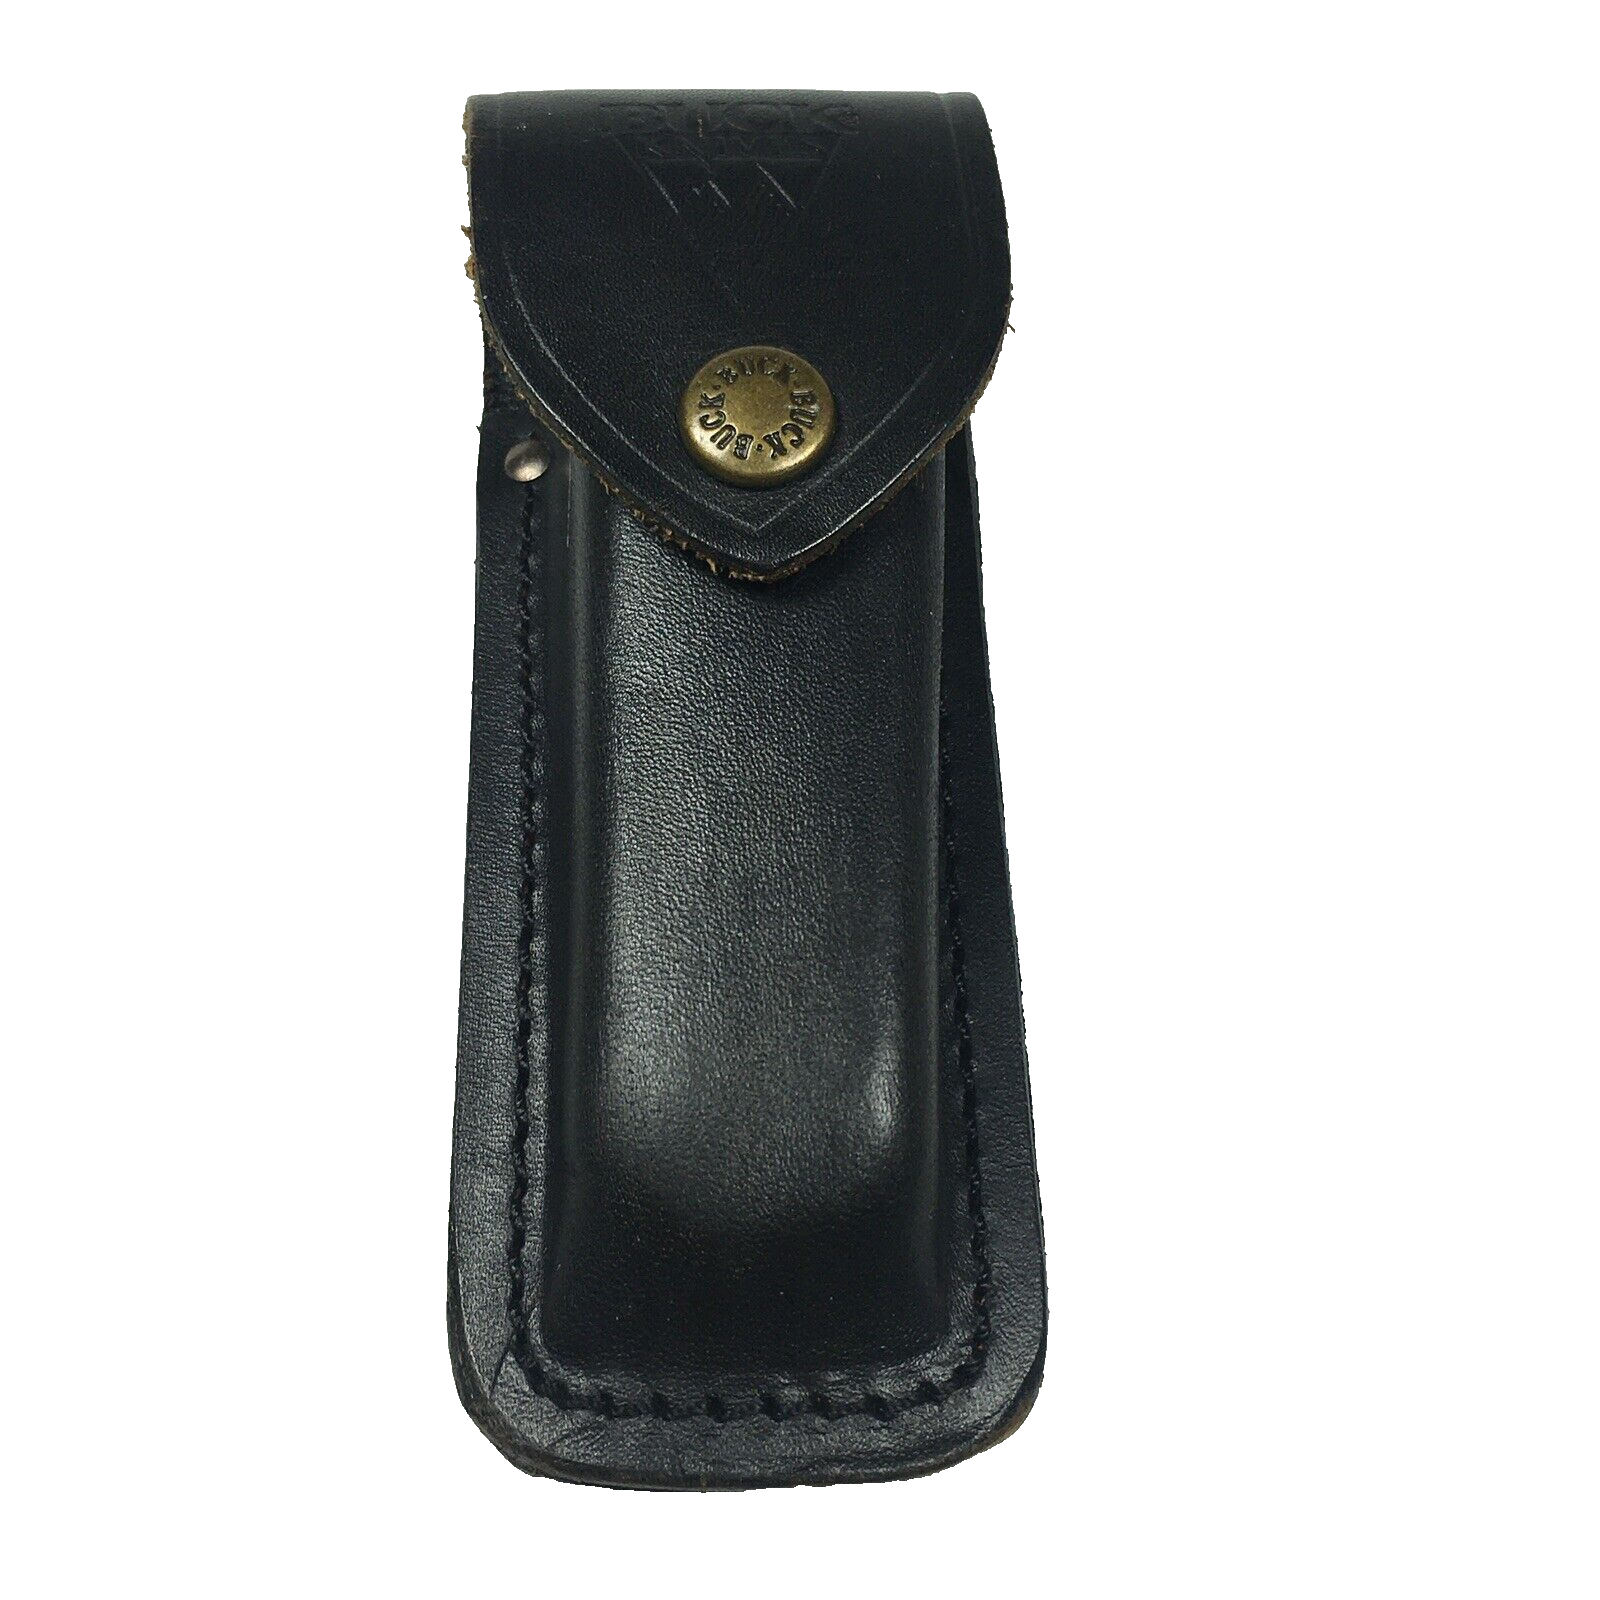 Vintage Buck 110 Pocket Knife SHEATH Black Leather Belt Loop up to 5" - $29.00